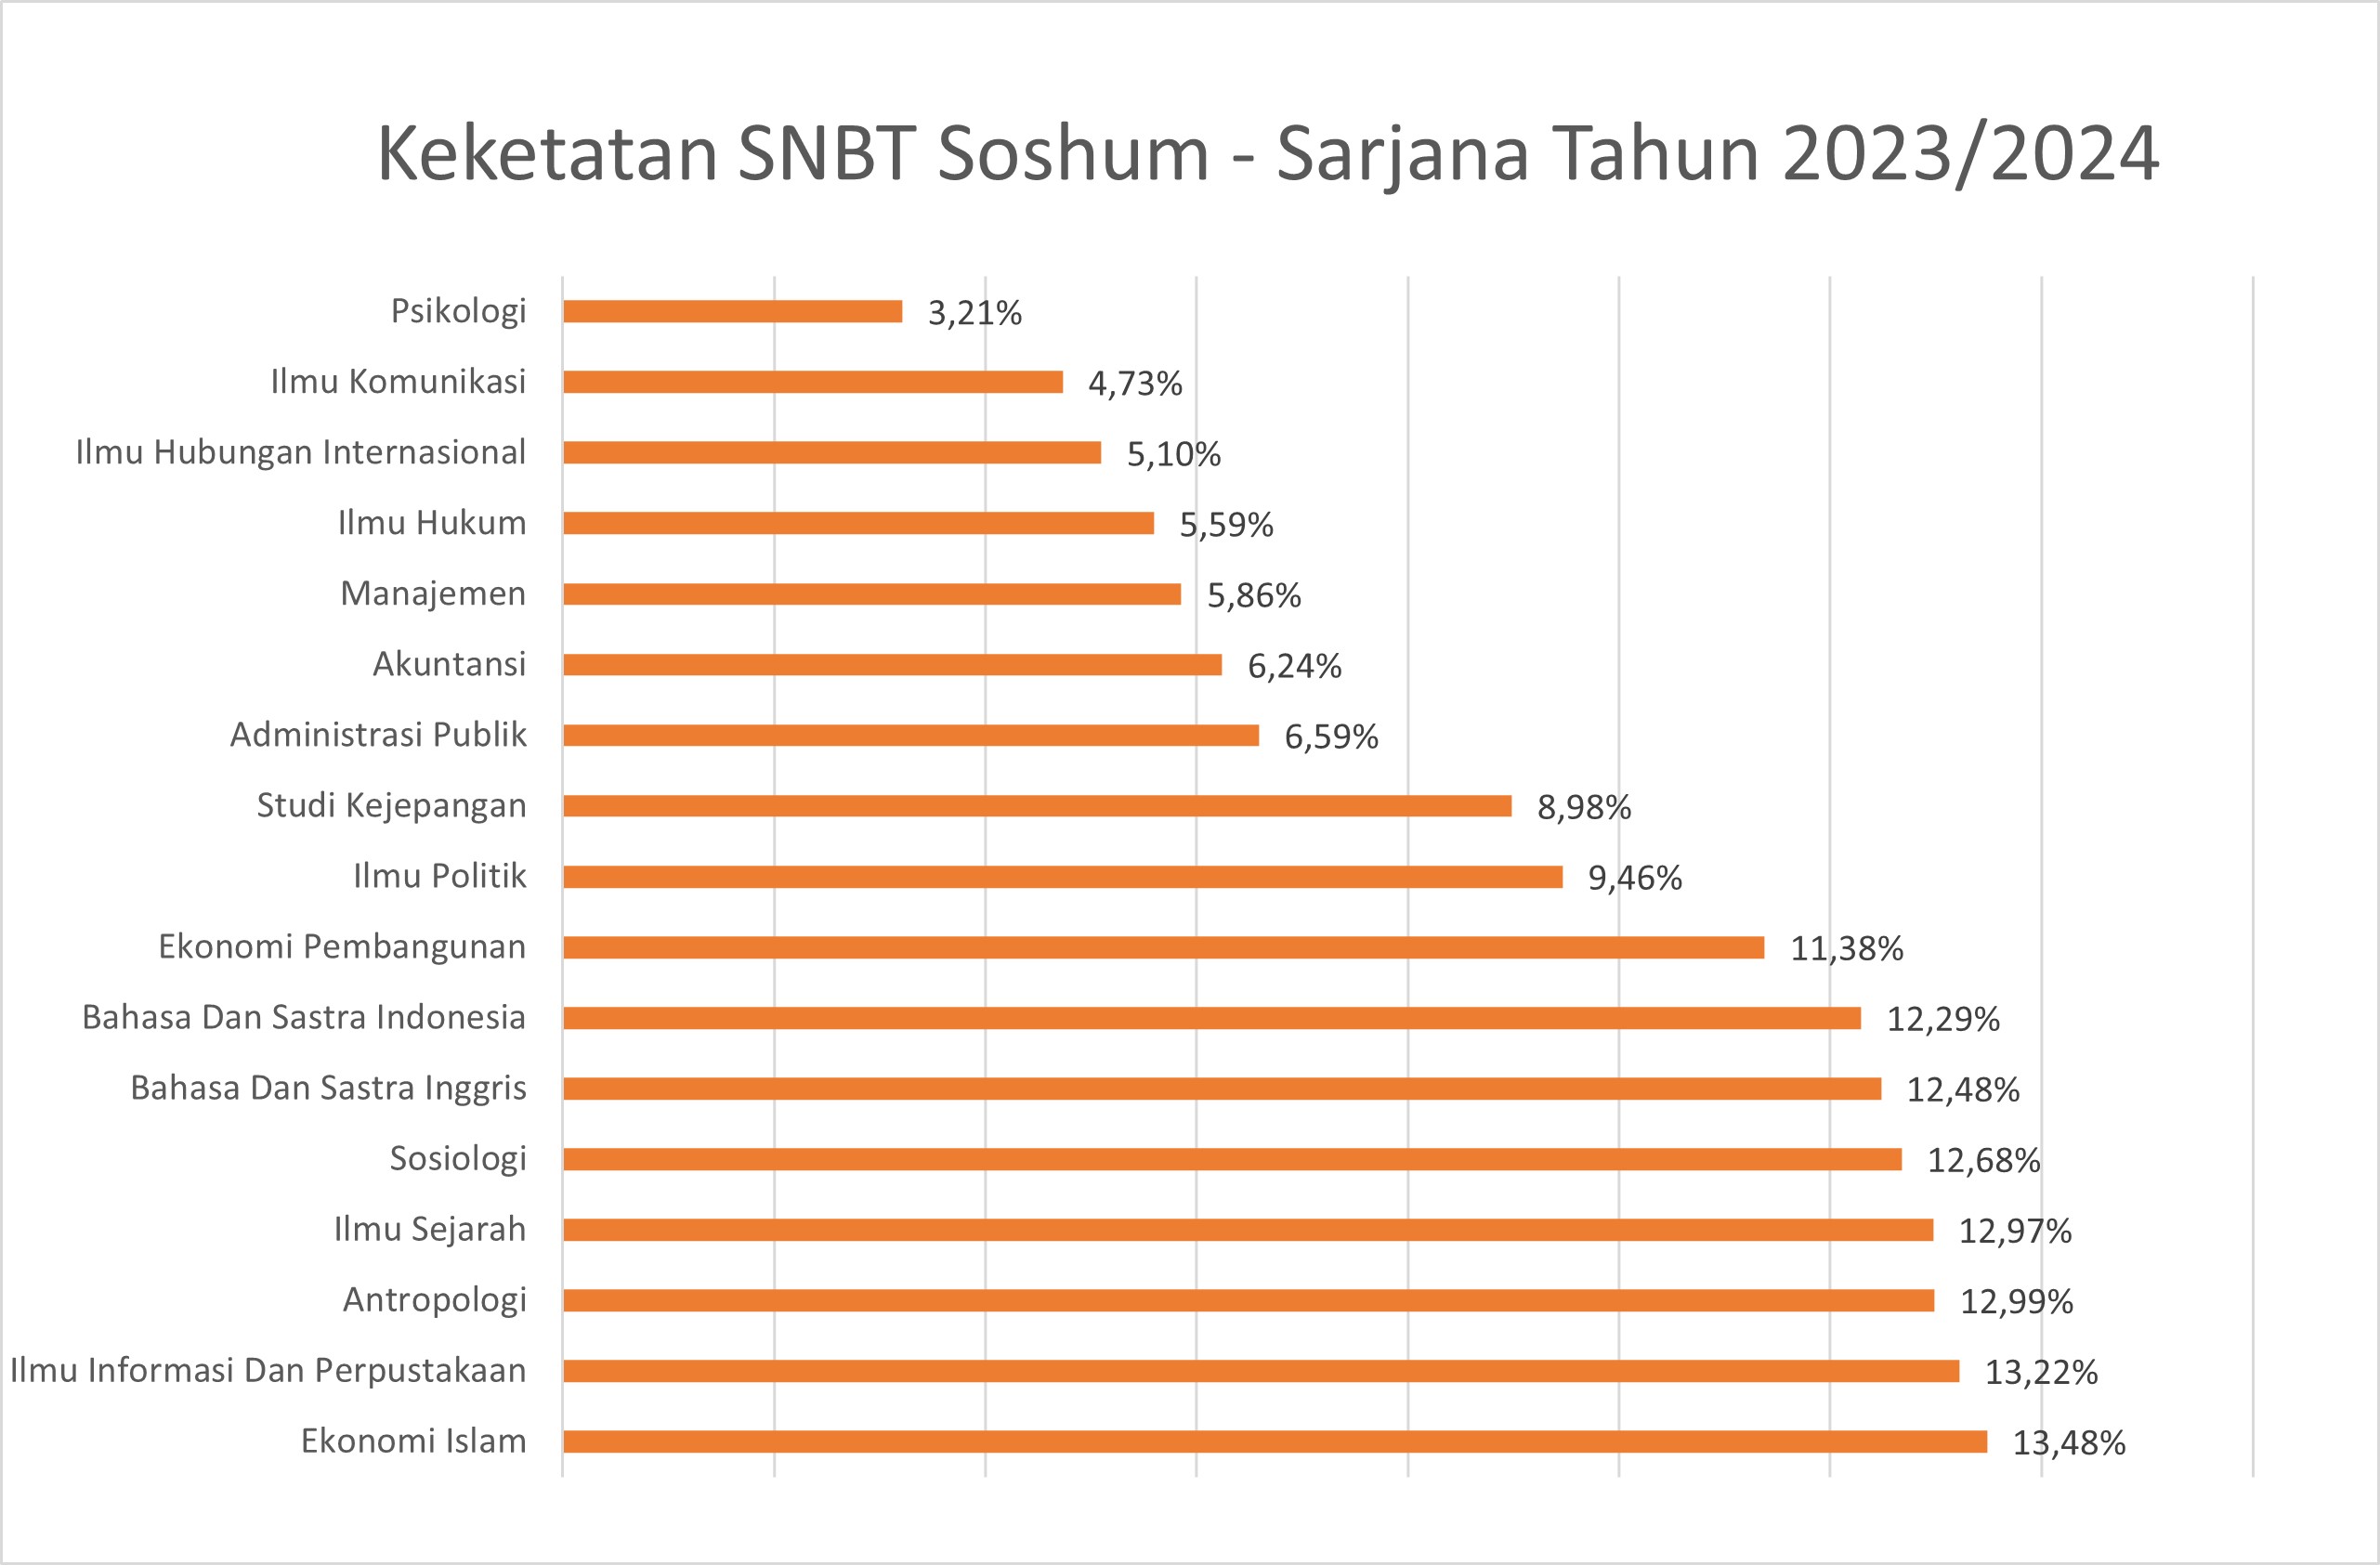 s1-soshum-snbt-2023-rev.jpg